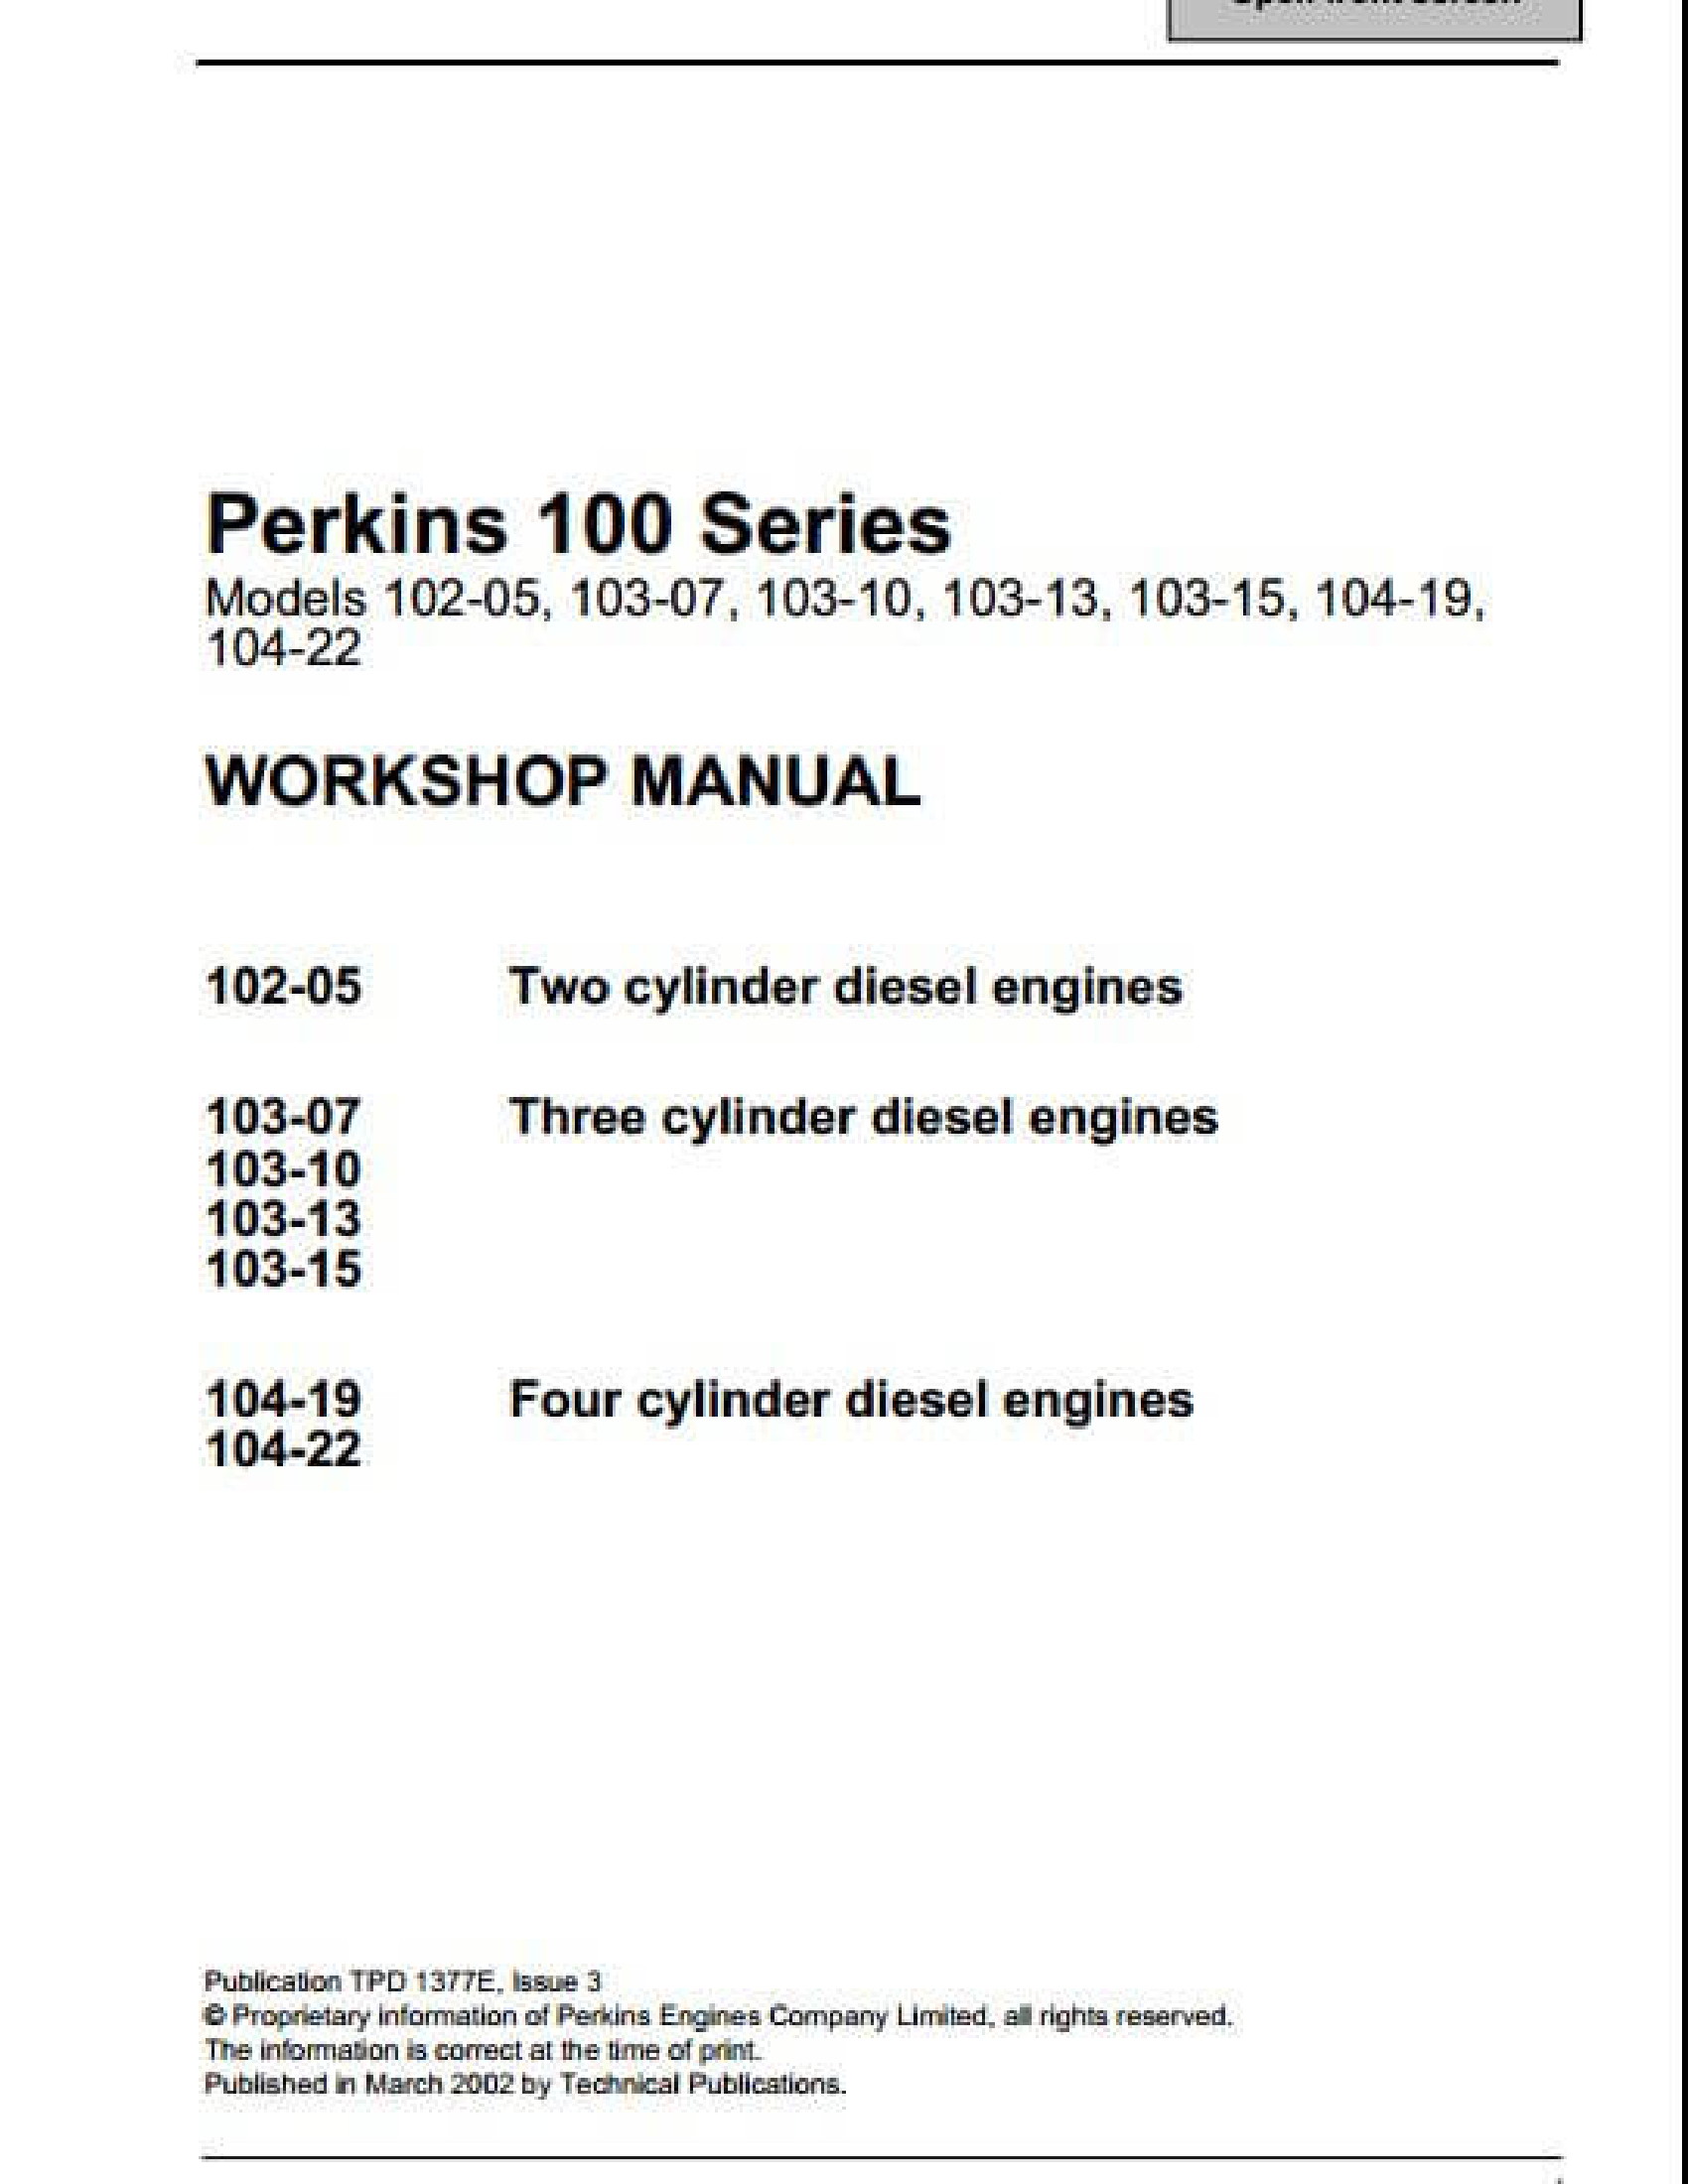 Perkins 100 Series Engine manual